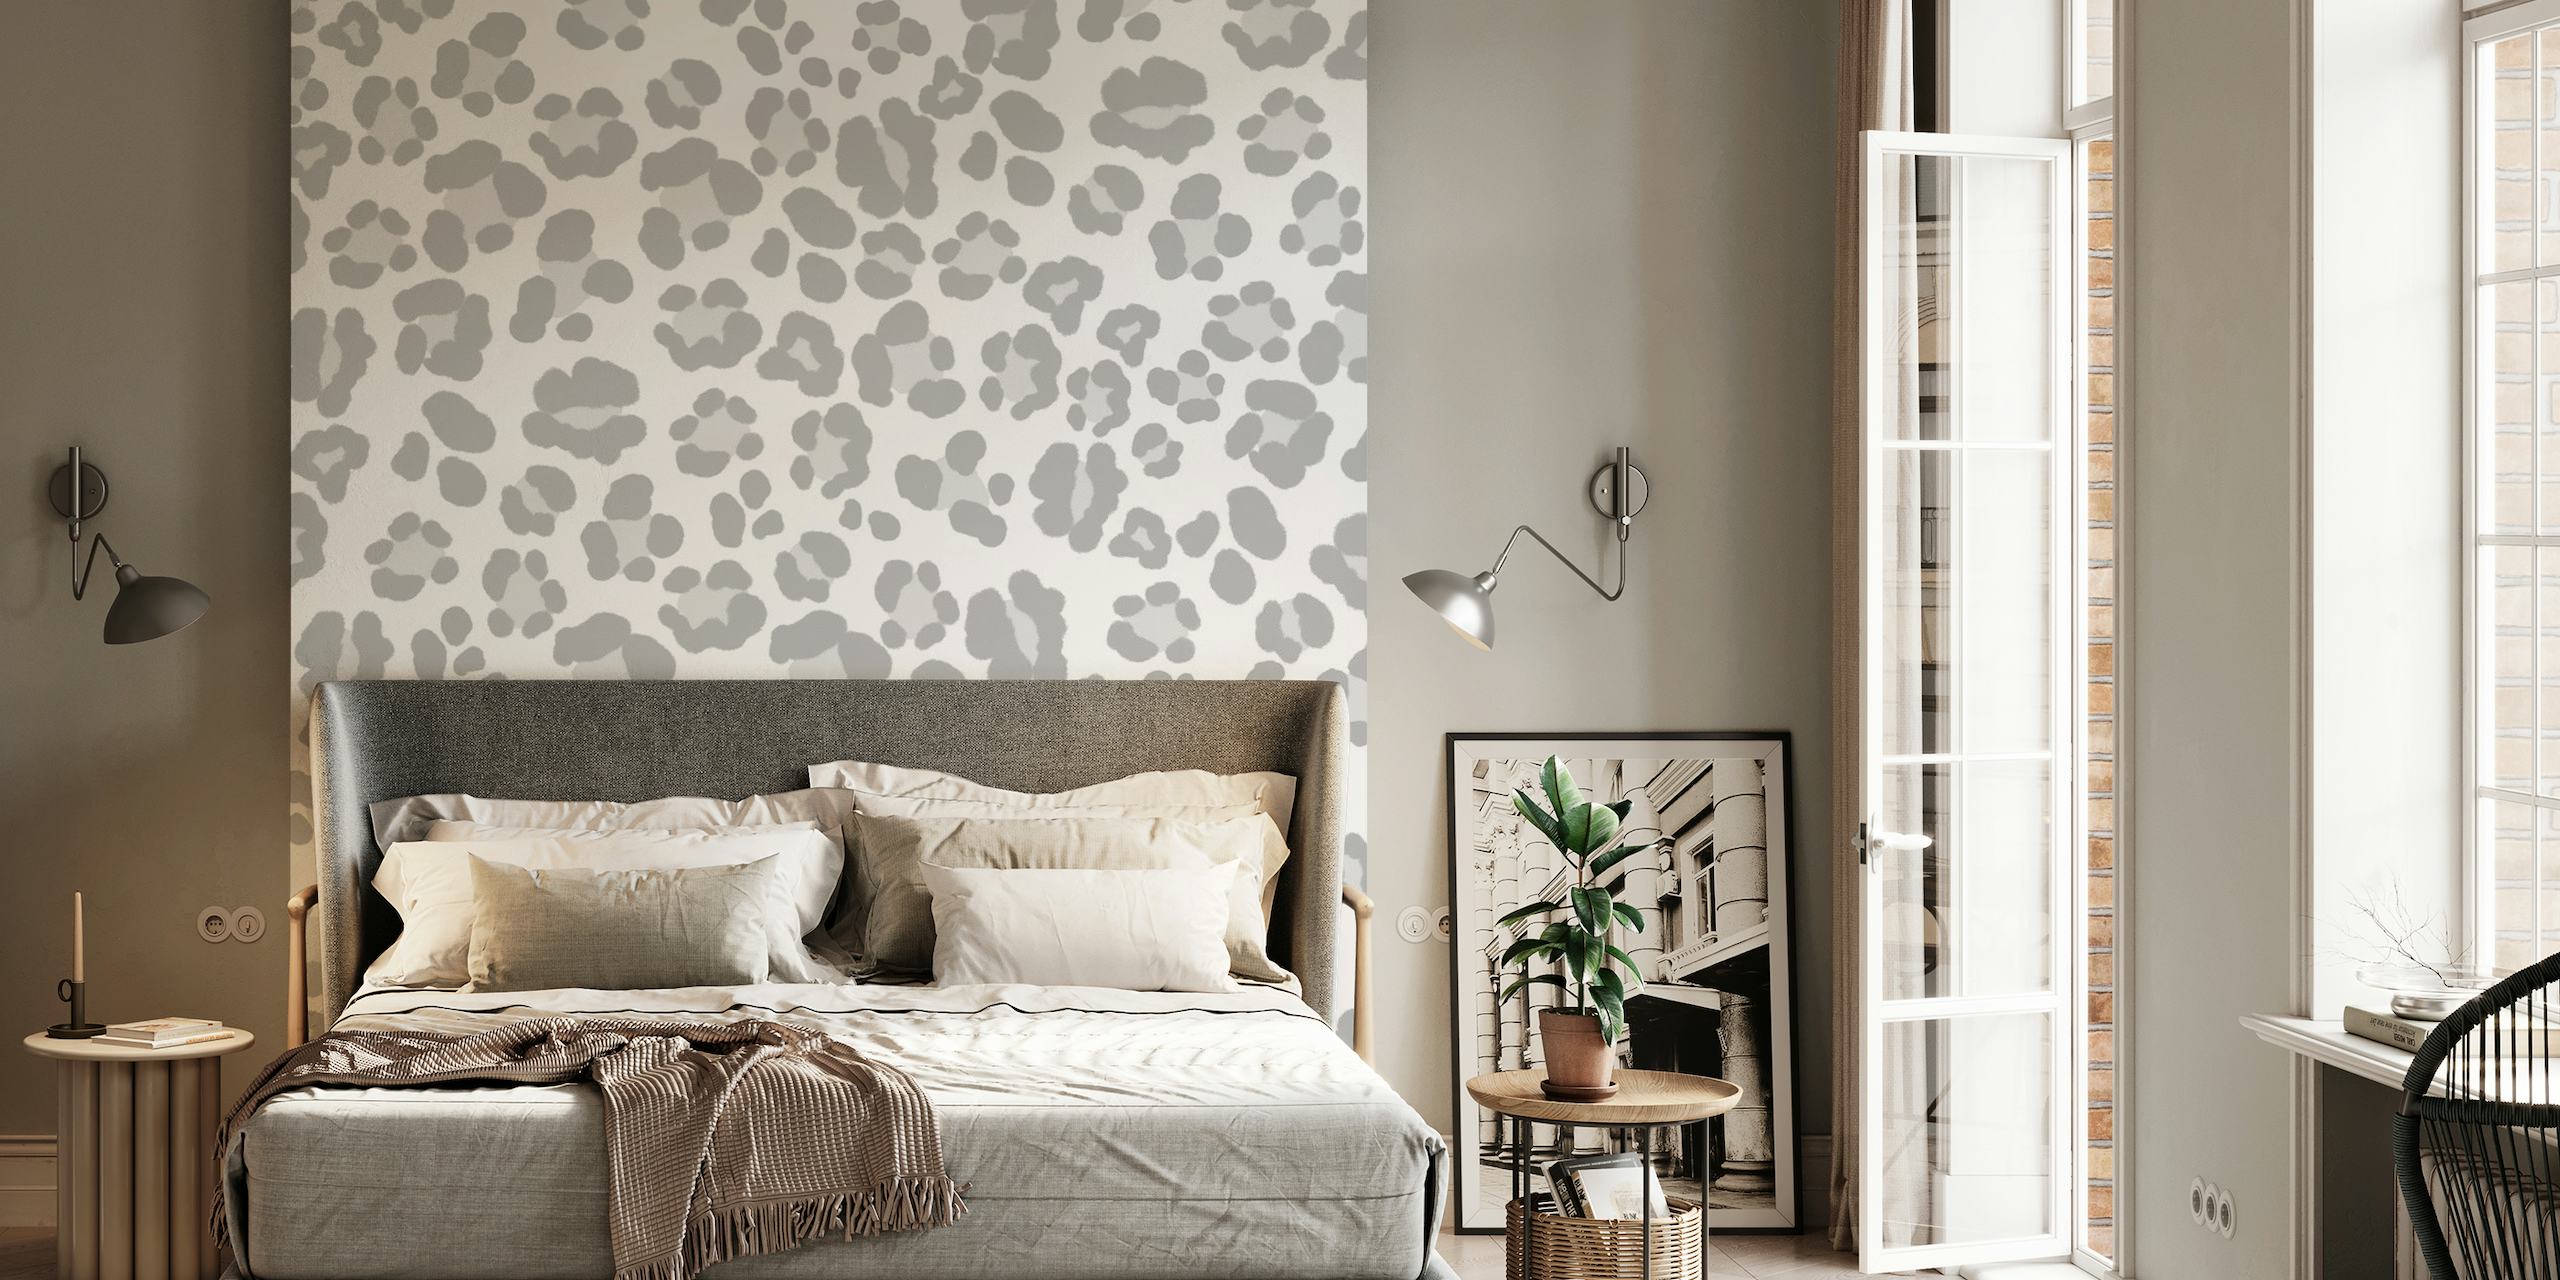 Leopard Print Glam 5 muurschildering met een subtiel grijs luipaardpatroon voor een chique interieur